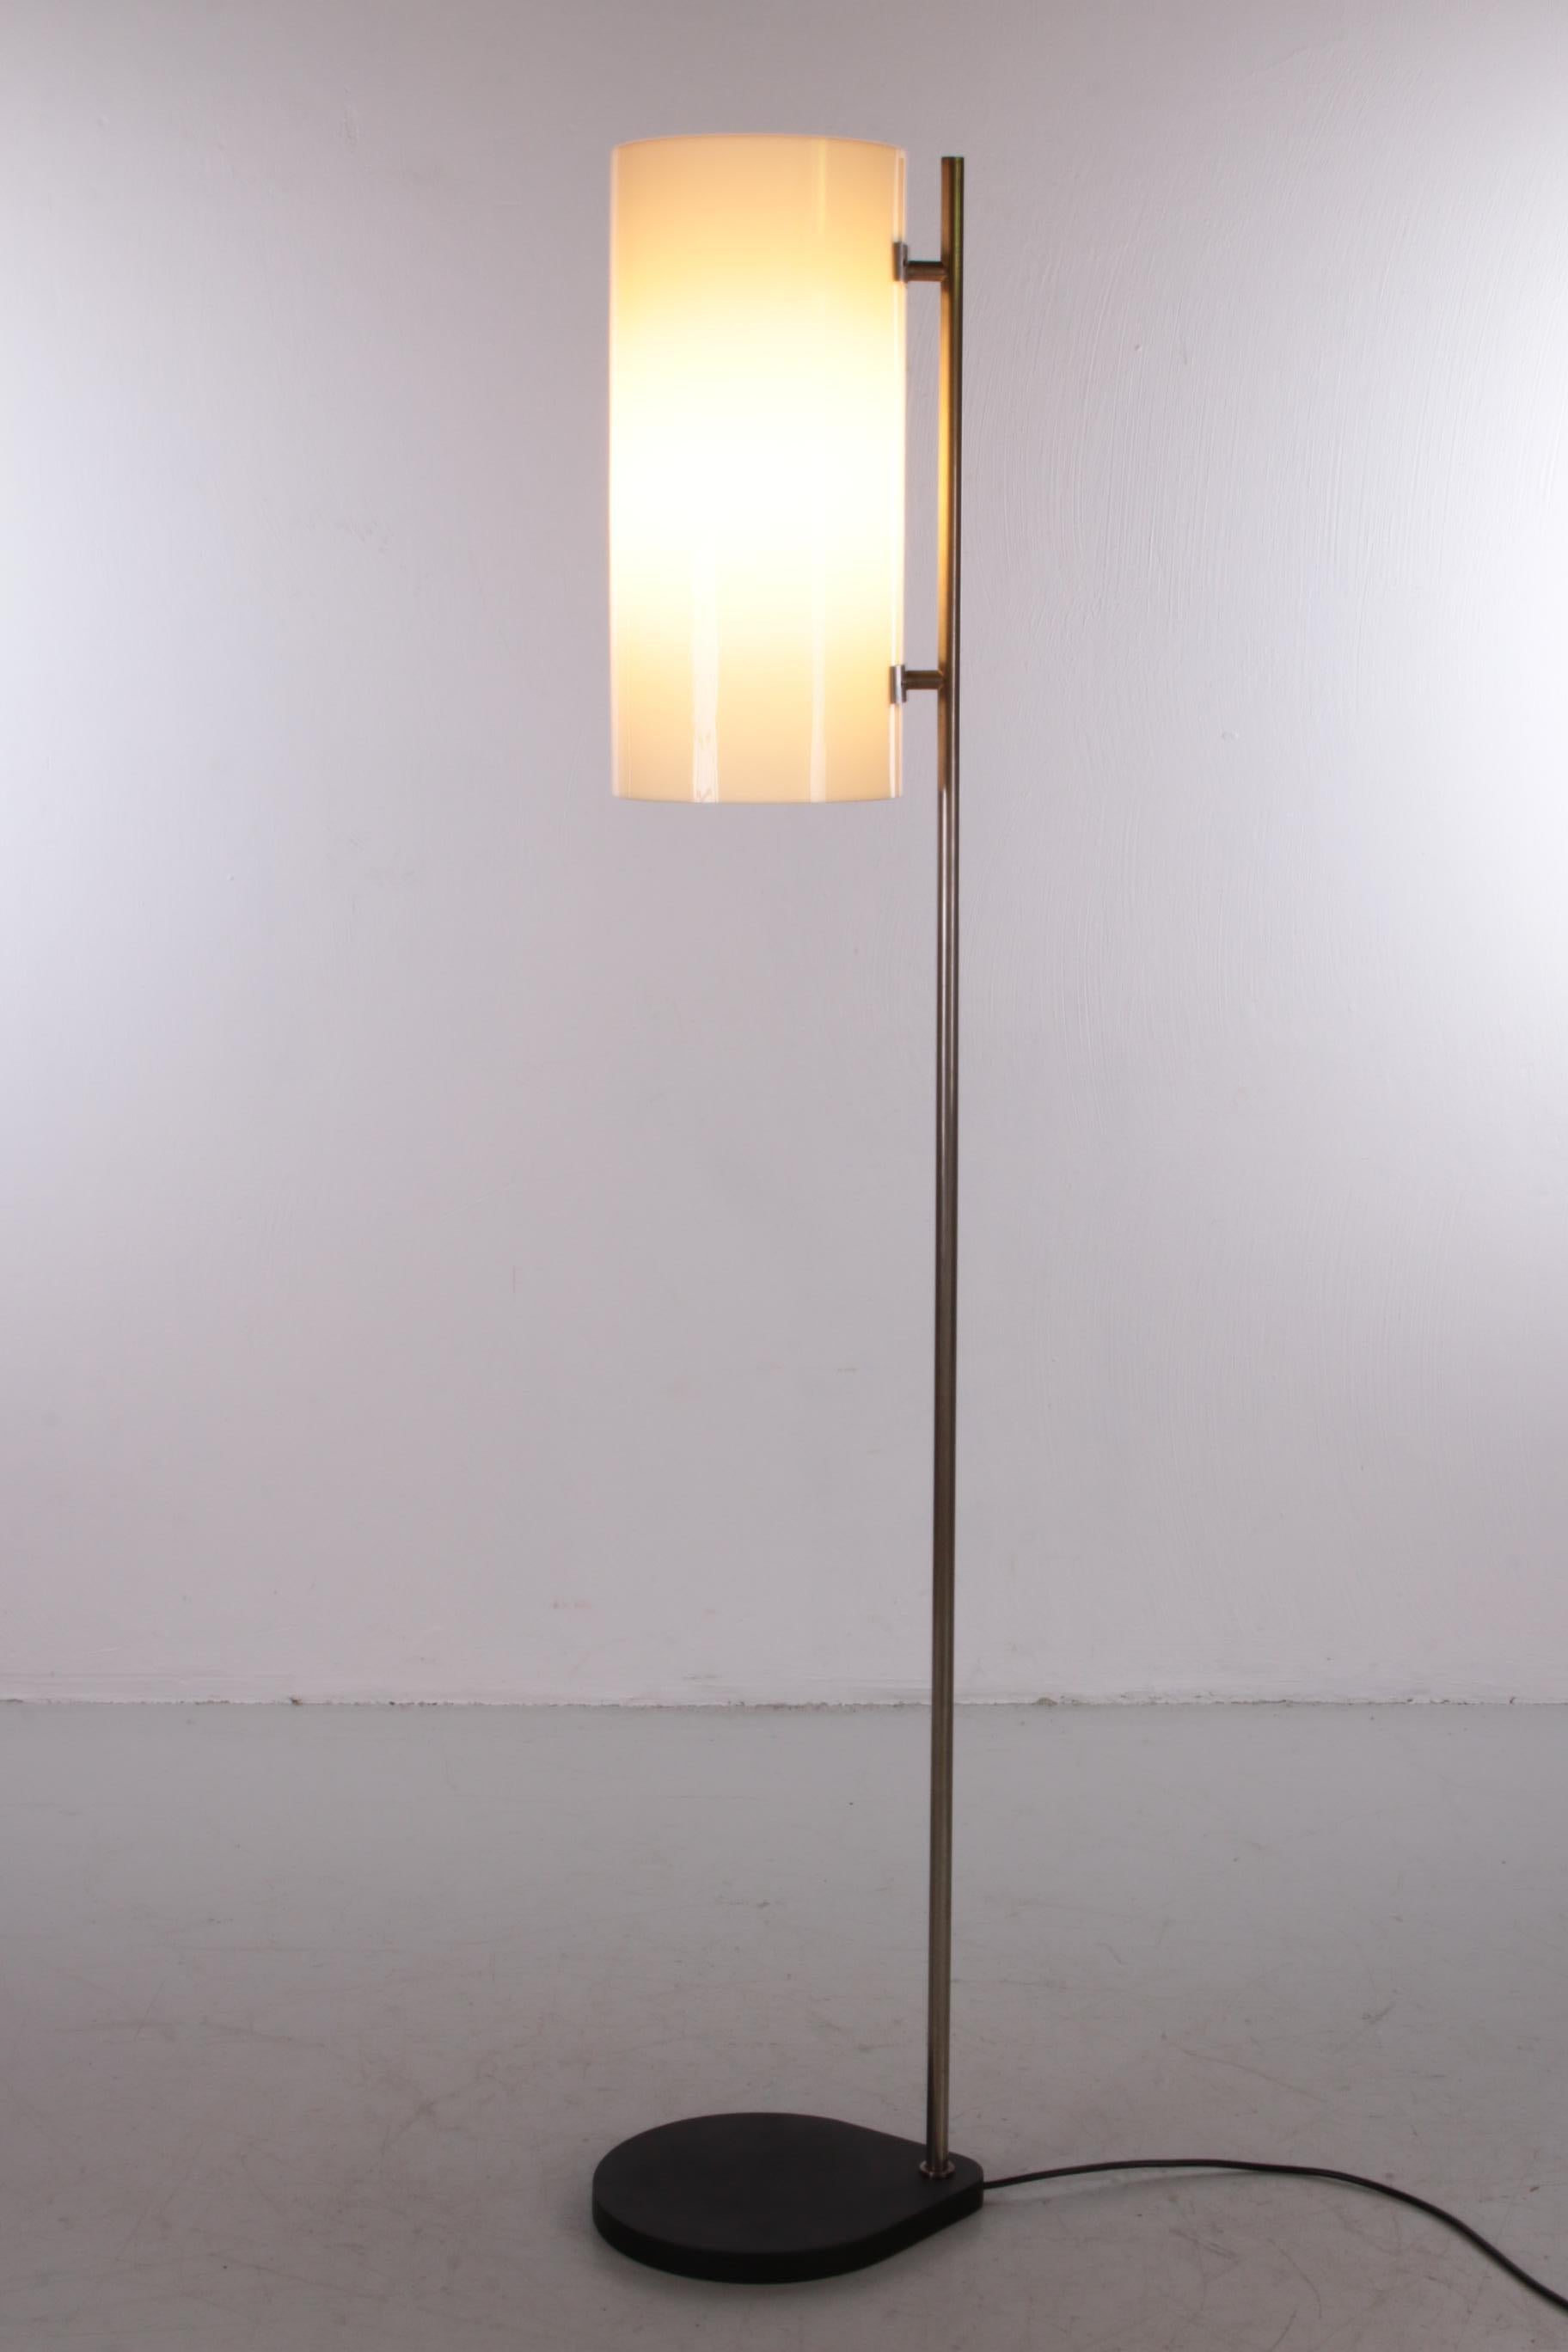 729 / 5000 Vertaalresultaten Vintage Floor Lamp Danish Design by Louis Poulssen 3